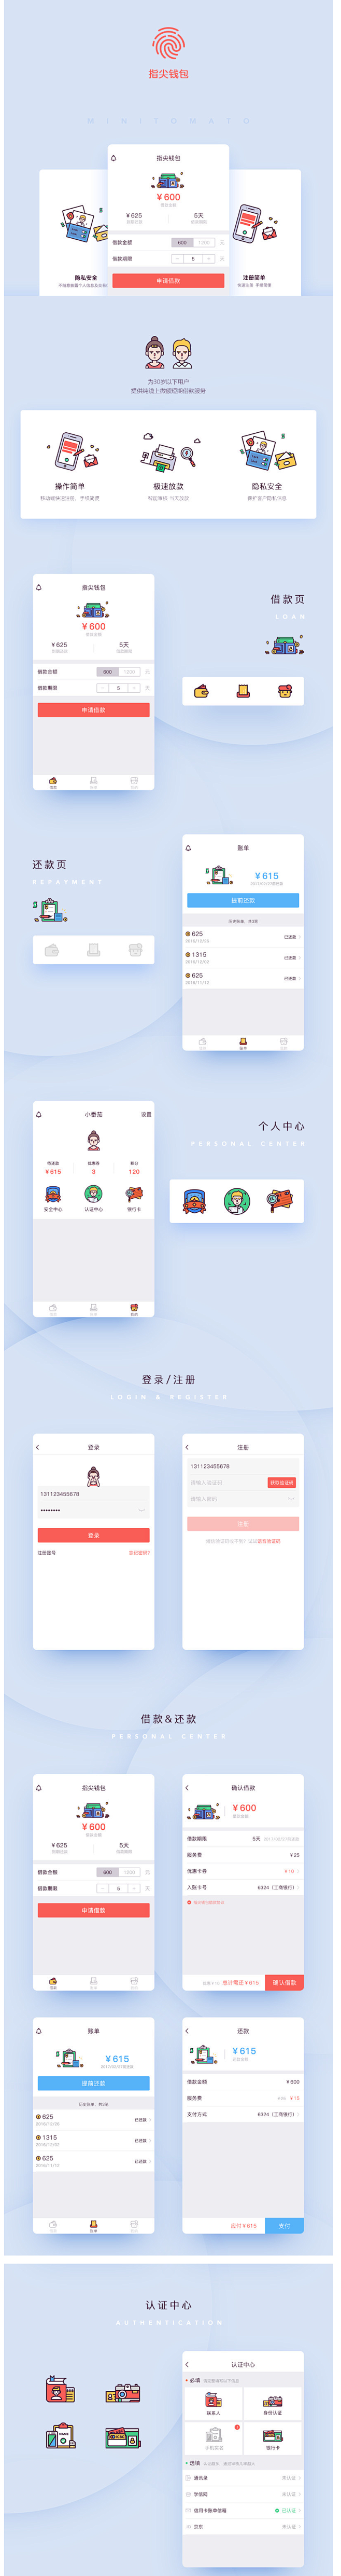 指尖钱包app再设计&思考-UI中国-专...